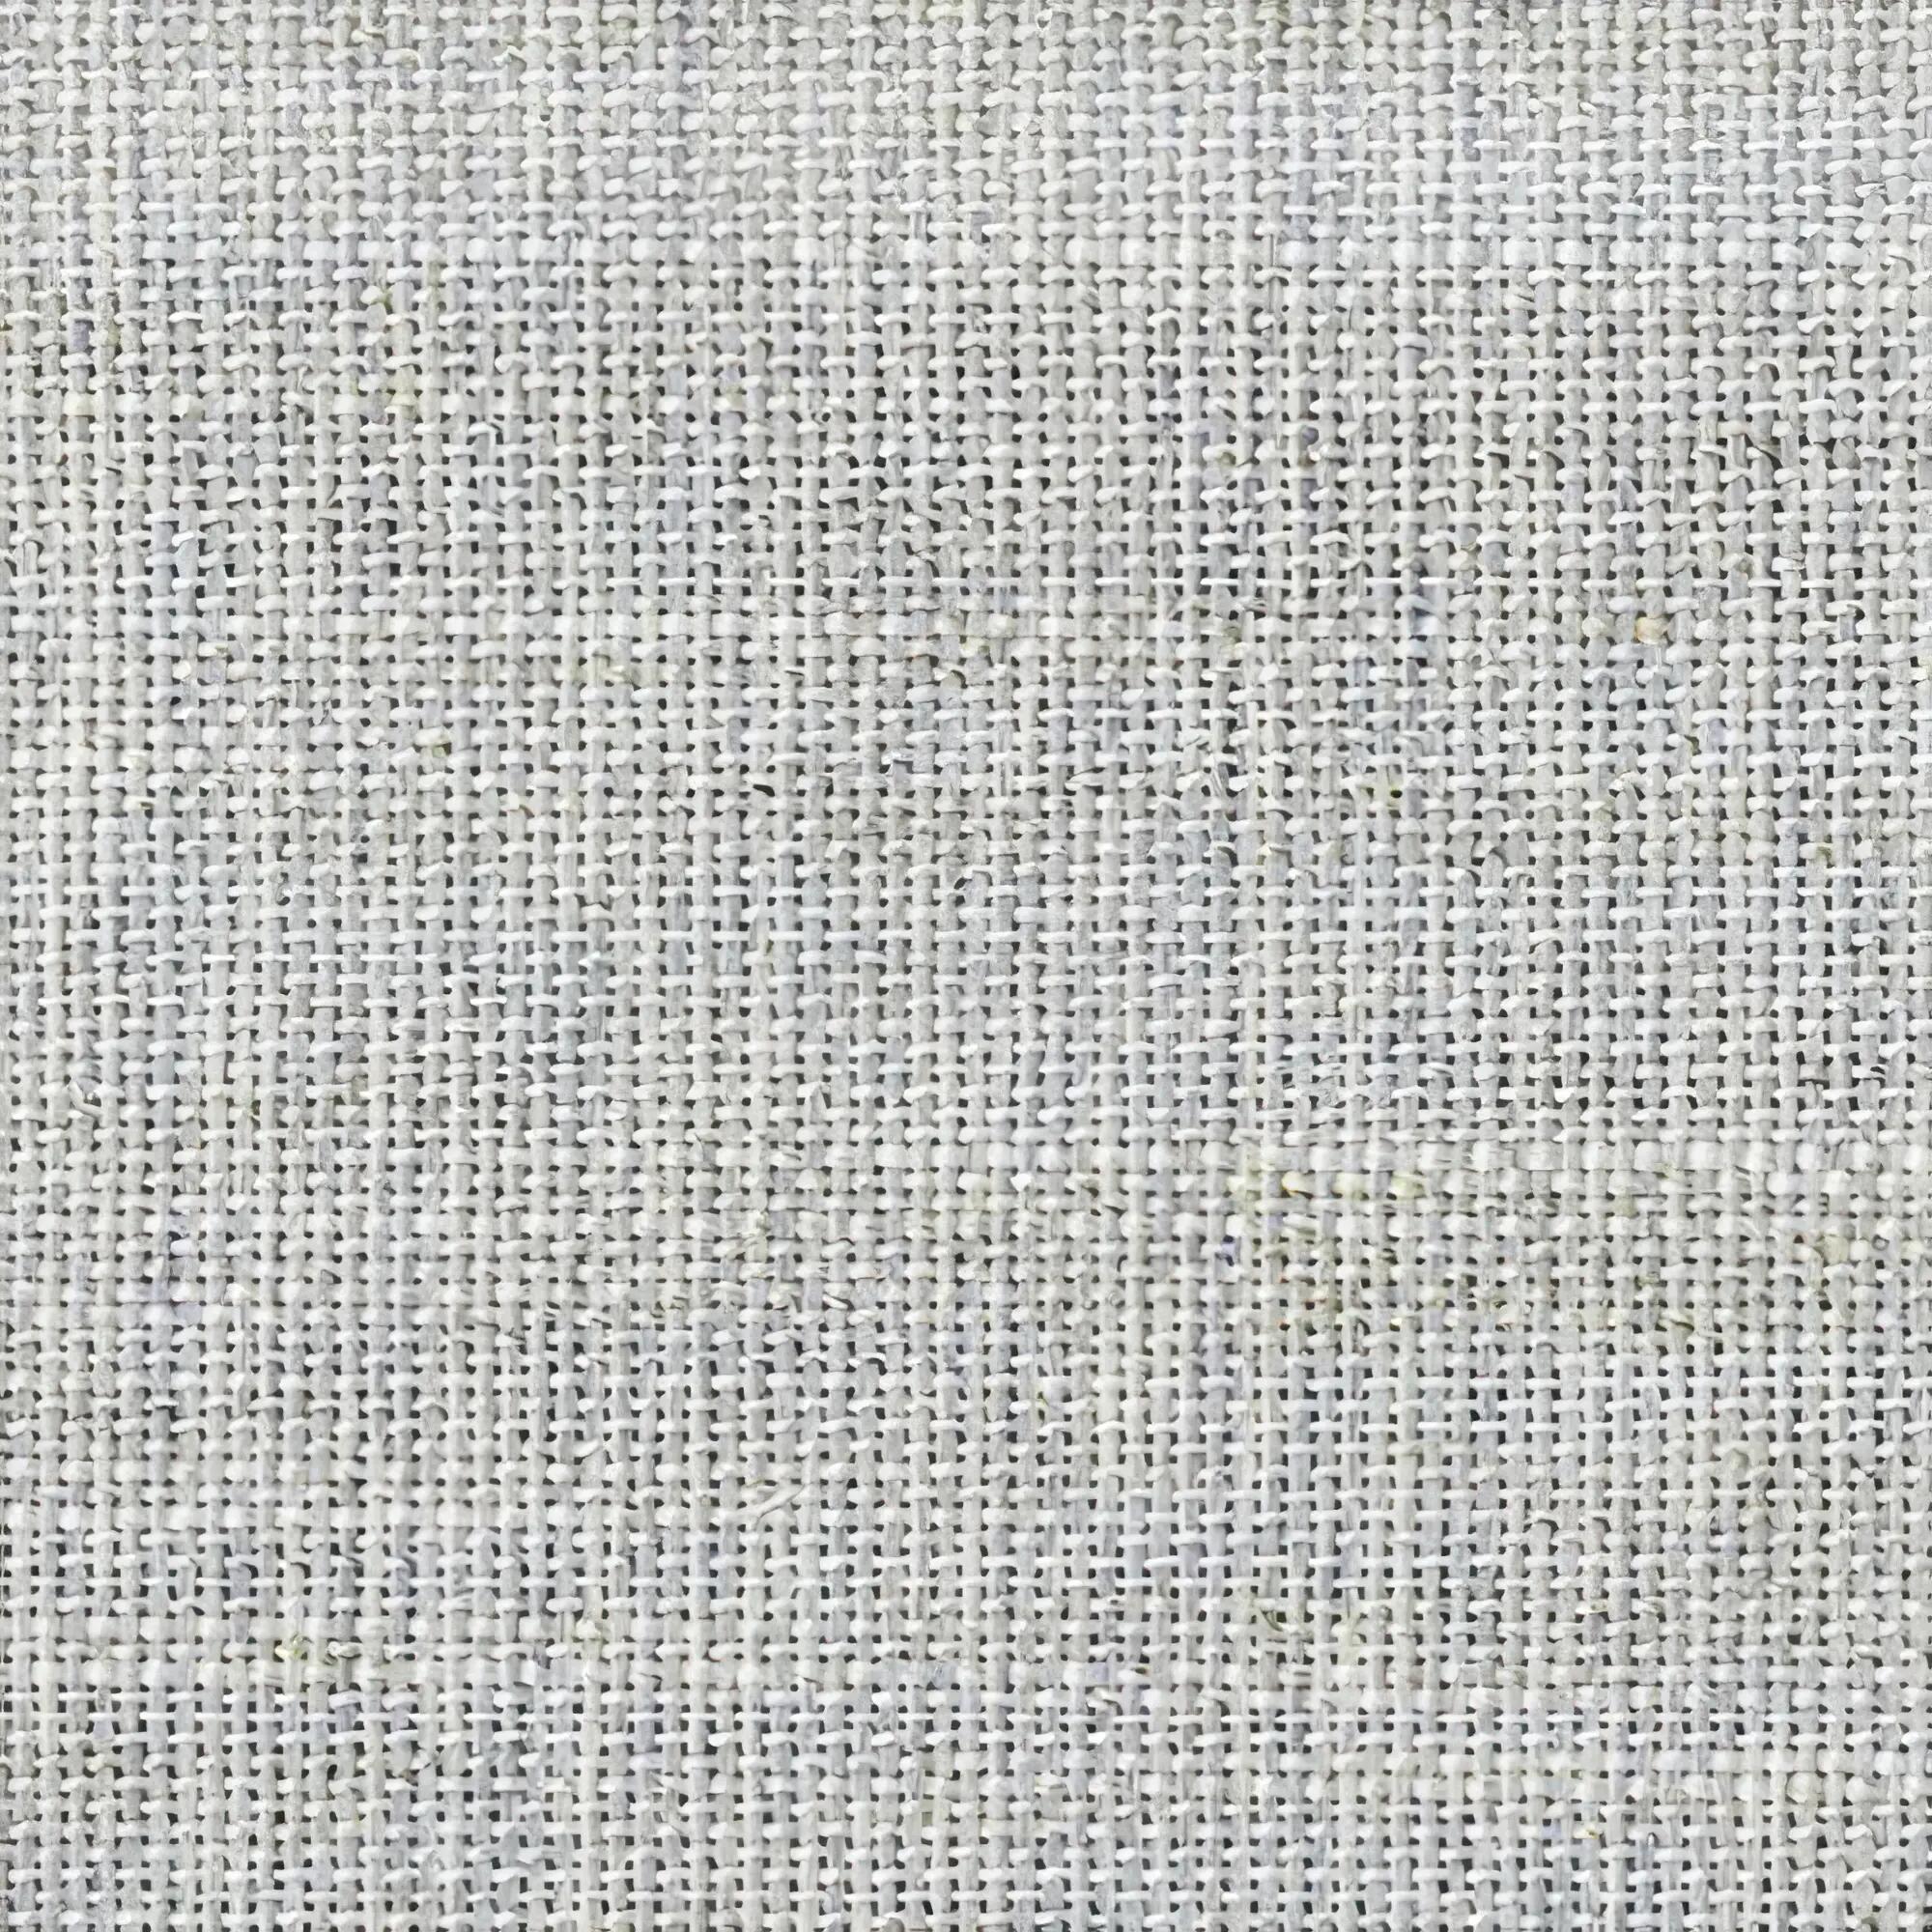 Tela al corte tapicería jacquard arkansas gris ancho 280 cm